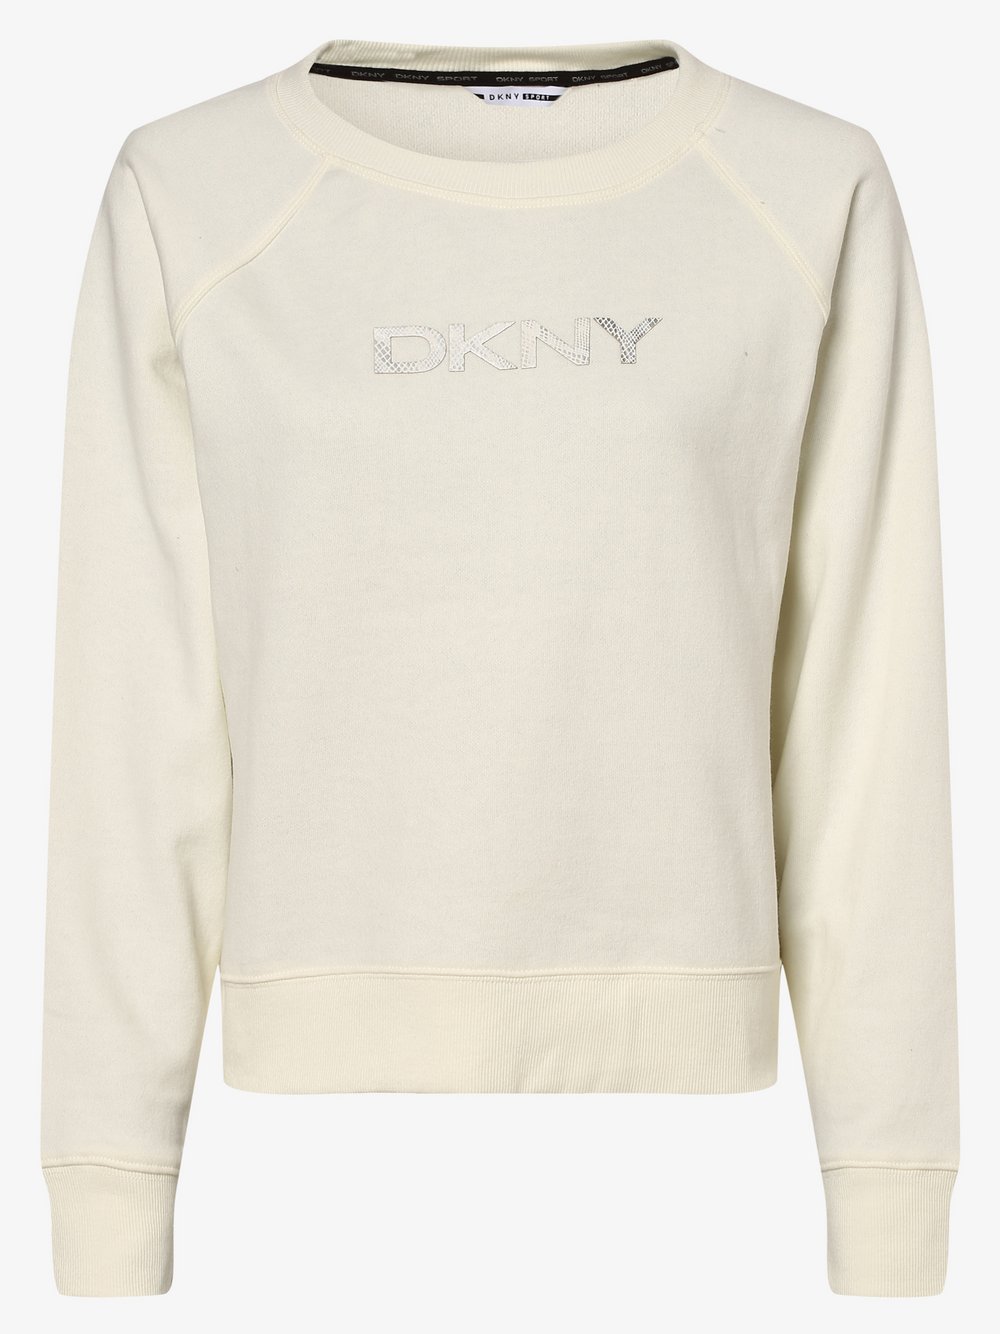 DKNY - Damska bluza nierozpinana, biały